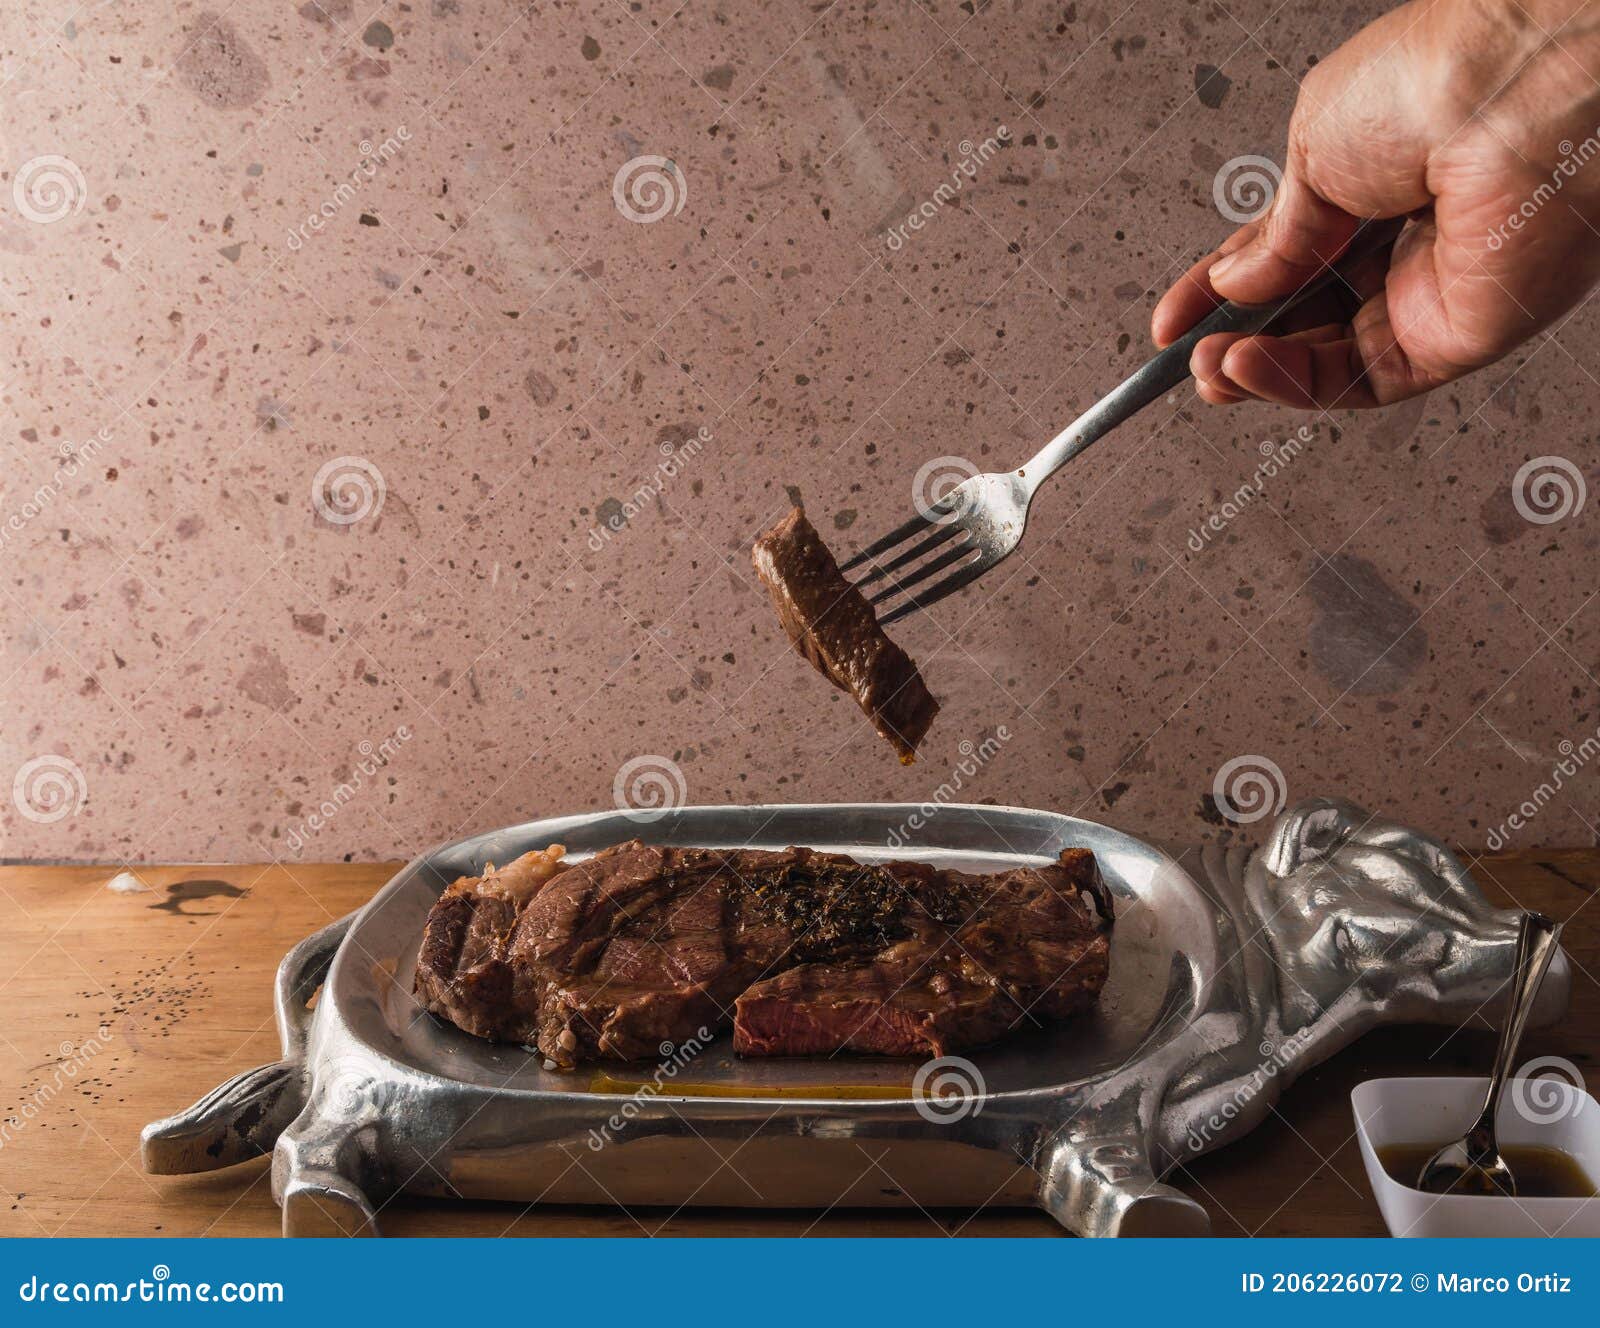 cut of meat `aguja norteÃÂ±a sonora`, served on a silver plate in the  of a cow 6